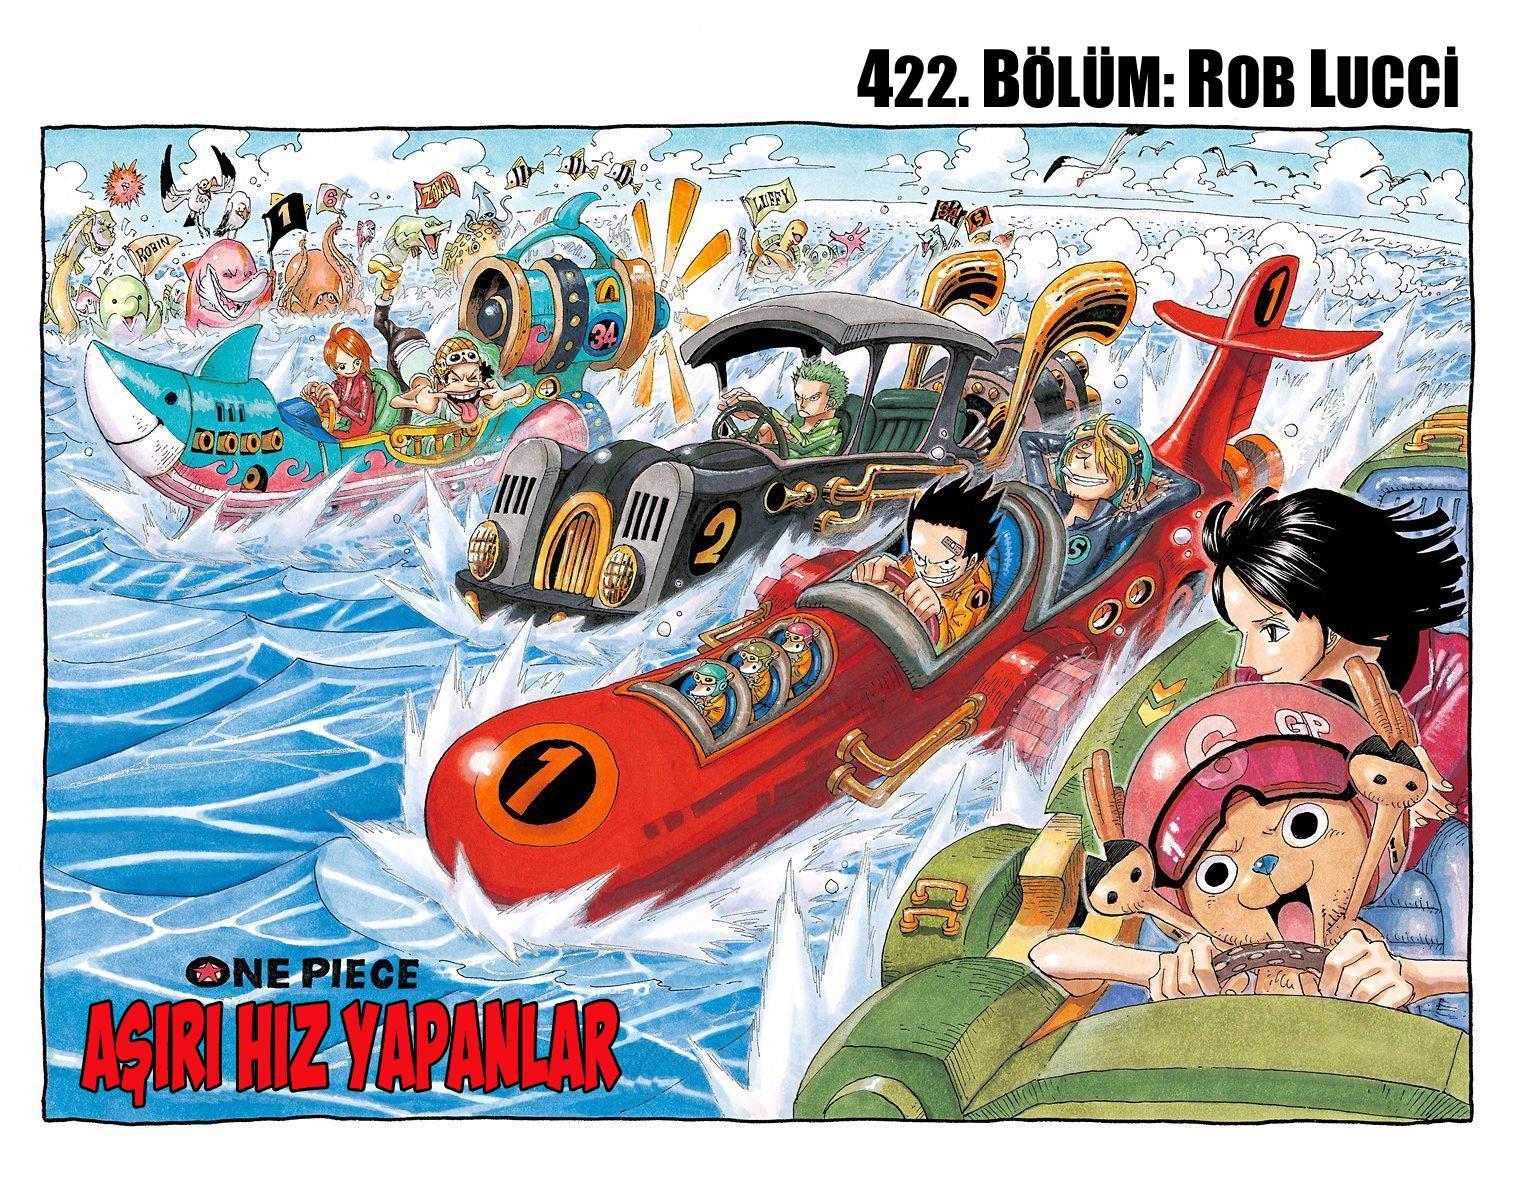 One Piece [Renkli] mangasının 0422 bölümünün 2. sayfasını okuyorsunuz.